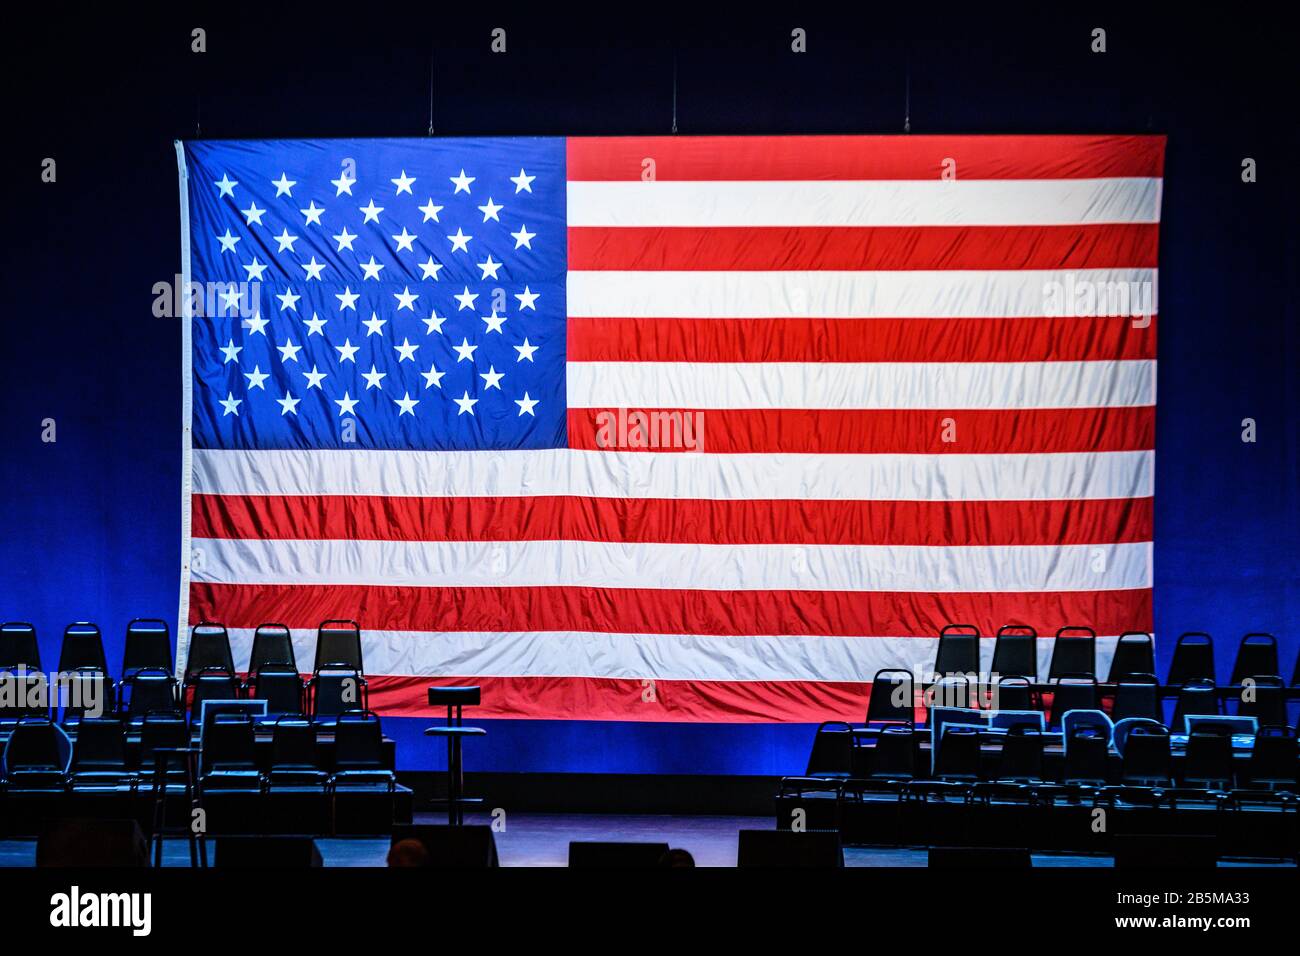 Nueva York, Ee.Uu., 7 De Febrero De 2020. Una gran bandera estadounidense se ve detrás del escenario antes del inicio de una campaña de la Senadora Elizabeth Warren en Brooklyn Foto de stock